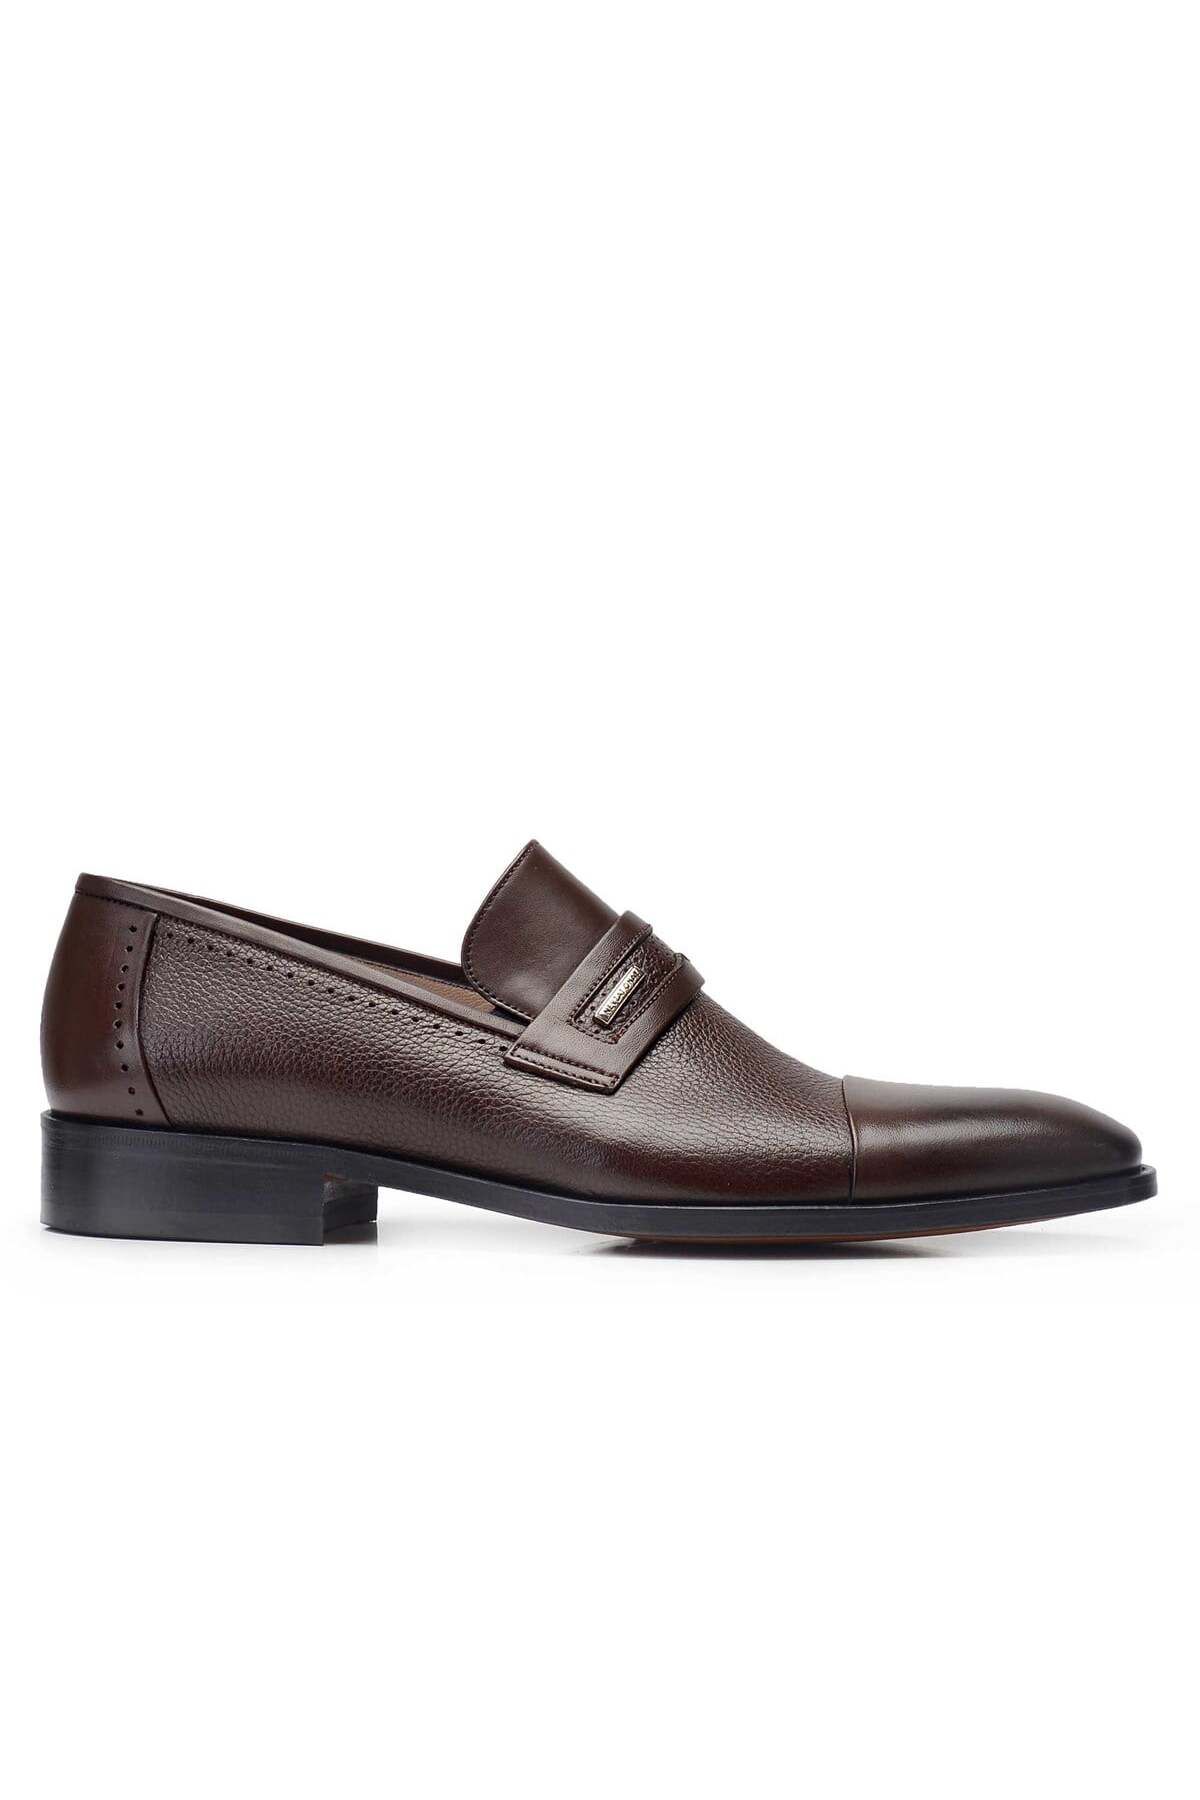 Nevzat Onay Kahverengi Klasik Loafer Kösele Erkek Ayakkabı -11830-